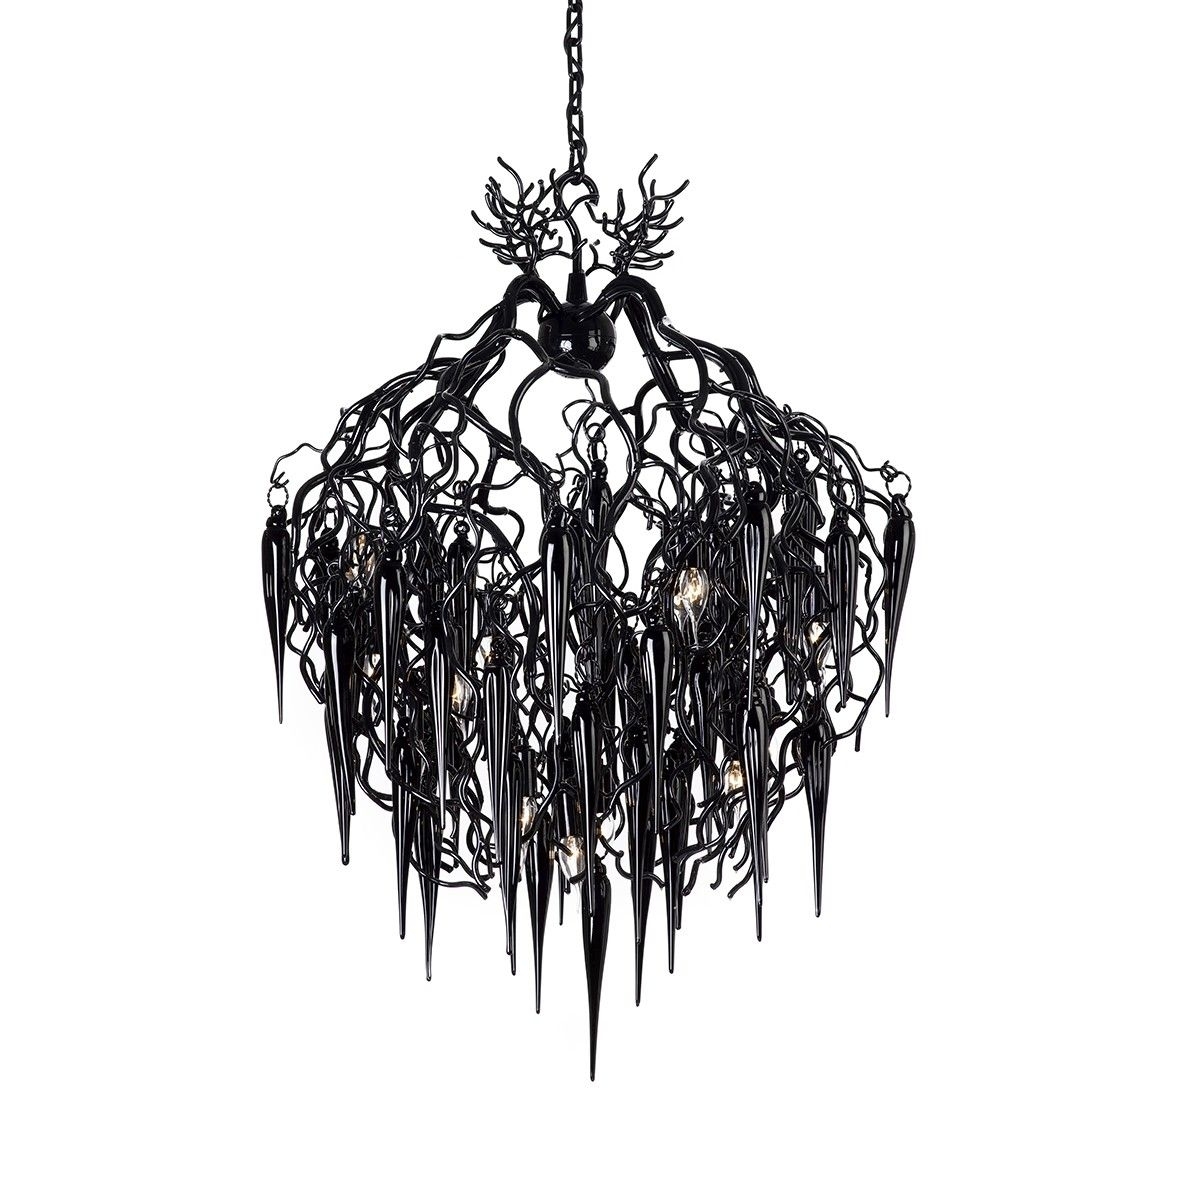 modern gothic chandelier